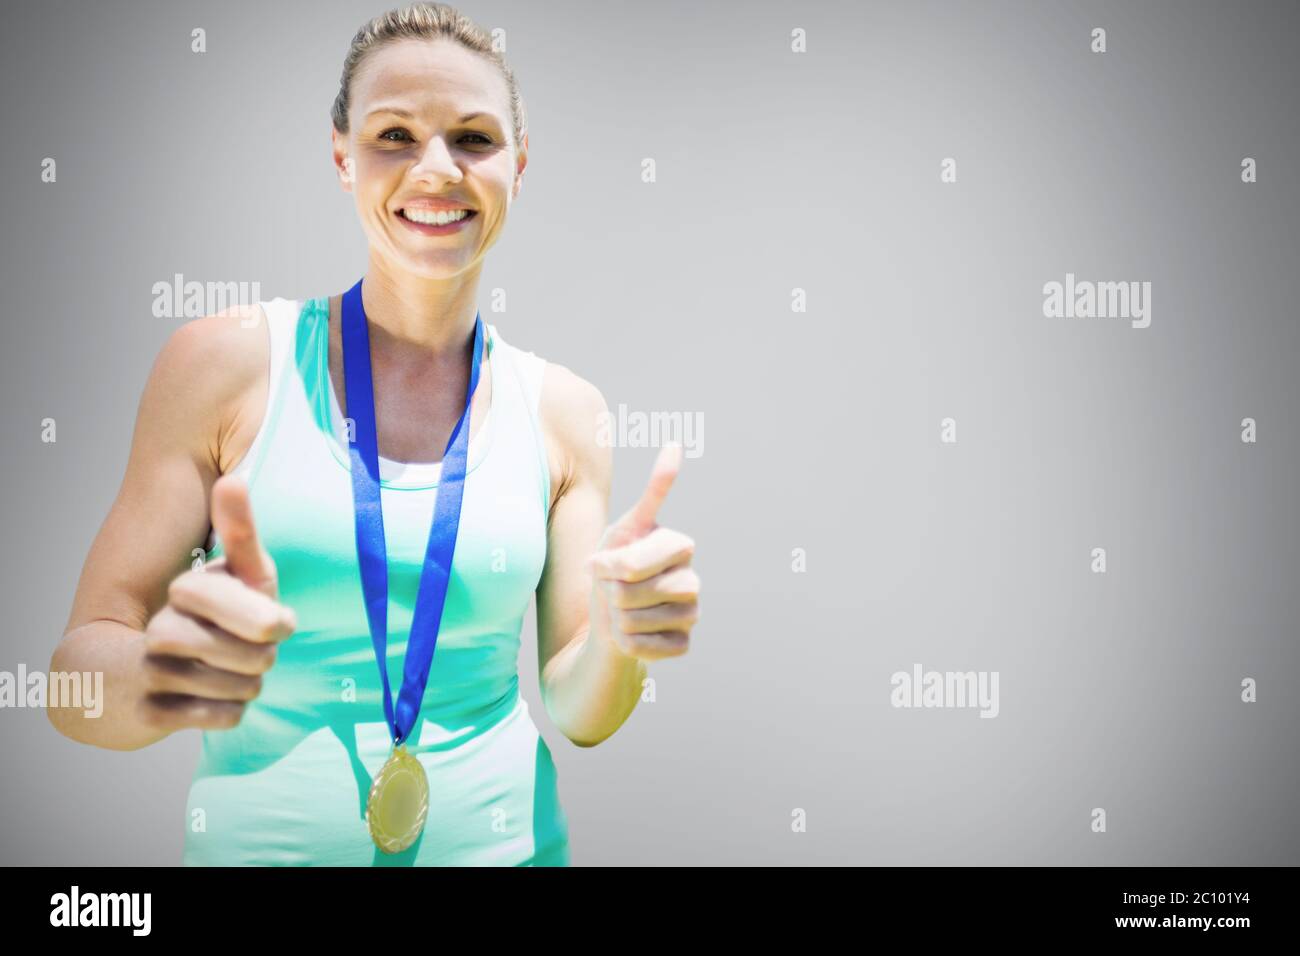 Image composite de portrait of smiling sportswoman tenant une médaille après une victoire Banque D'Images